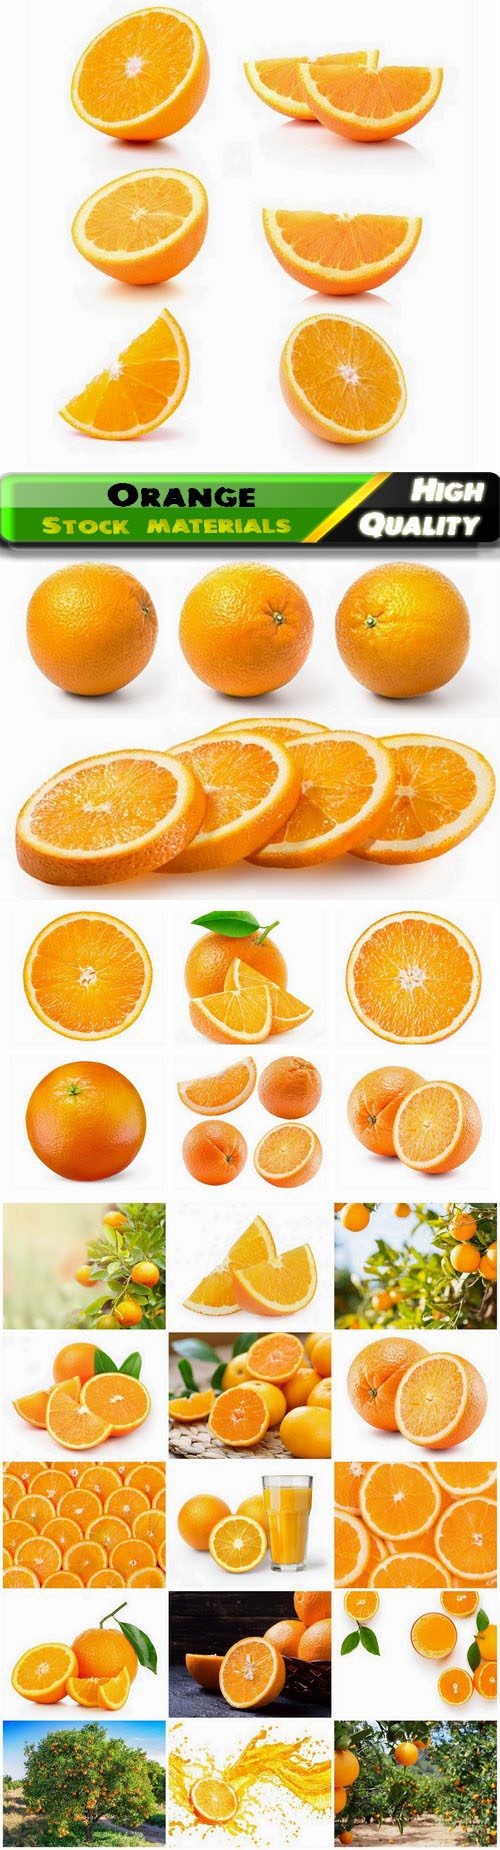 Orange fruit of the genus Citrus healthy food with vitamins 25 HQ Jpg